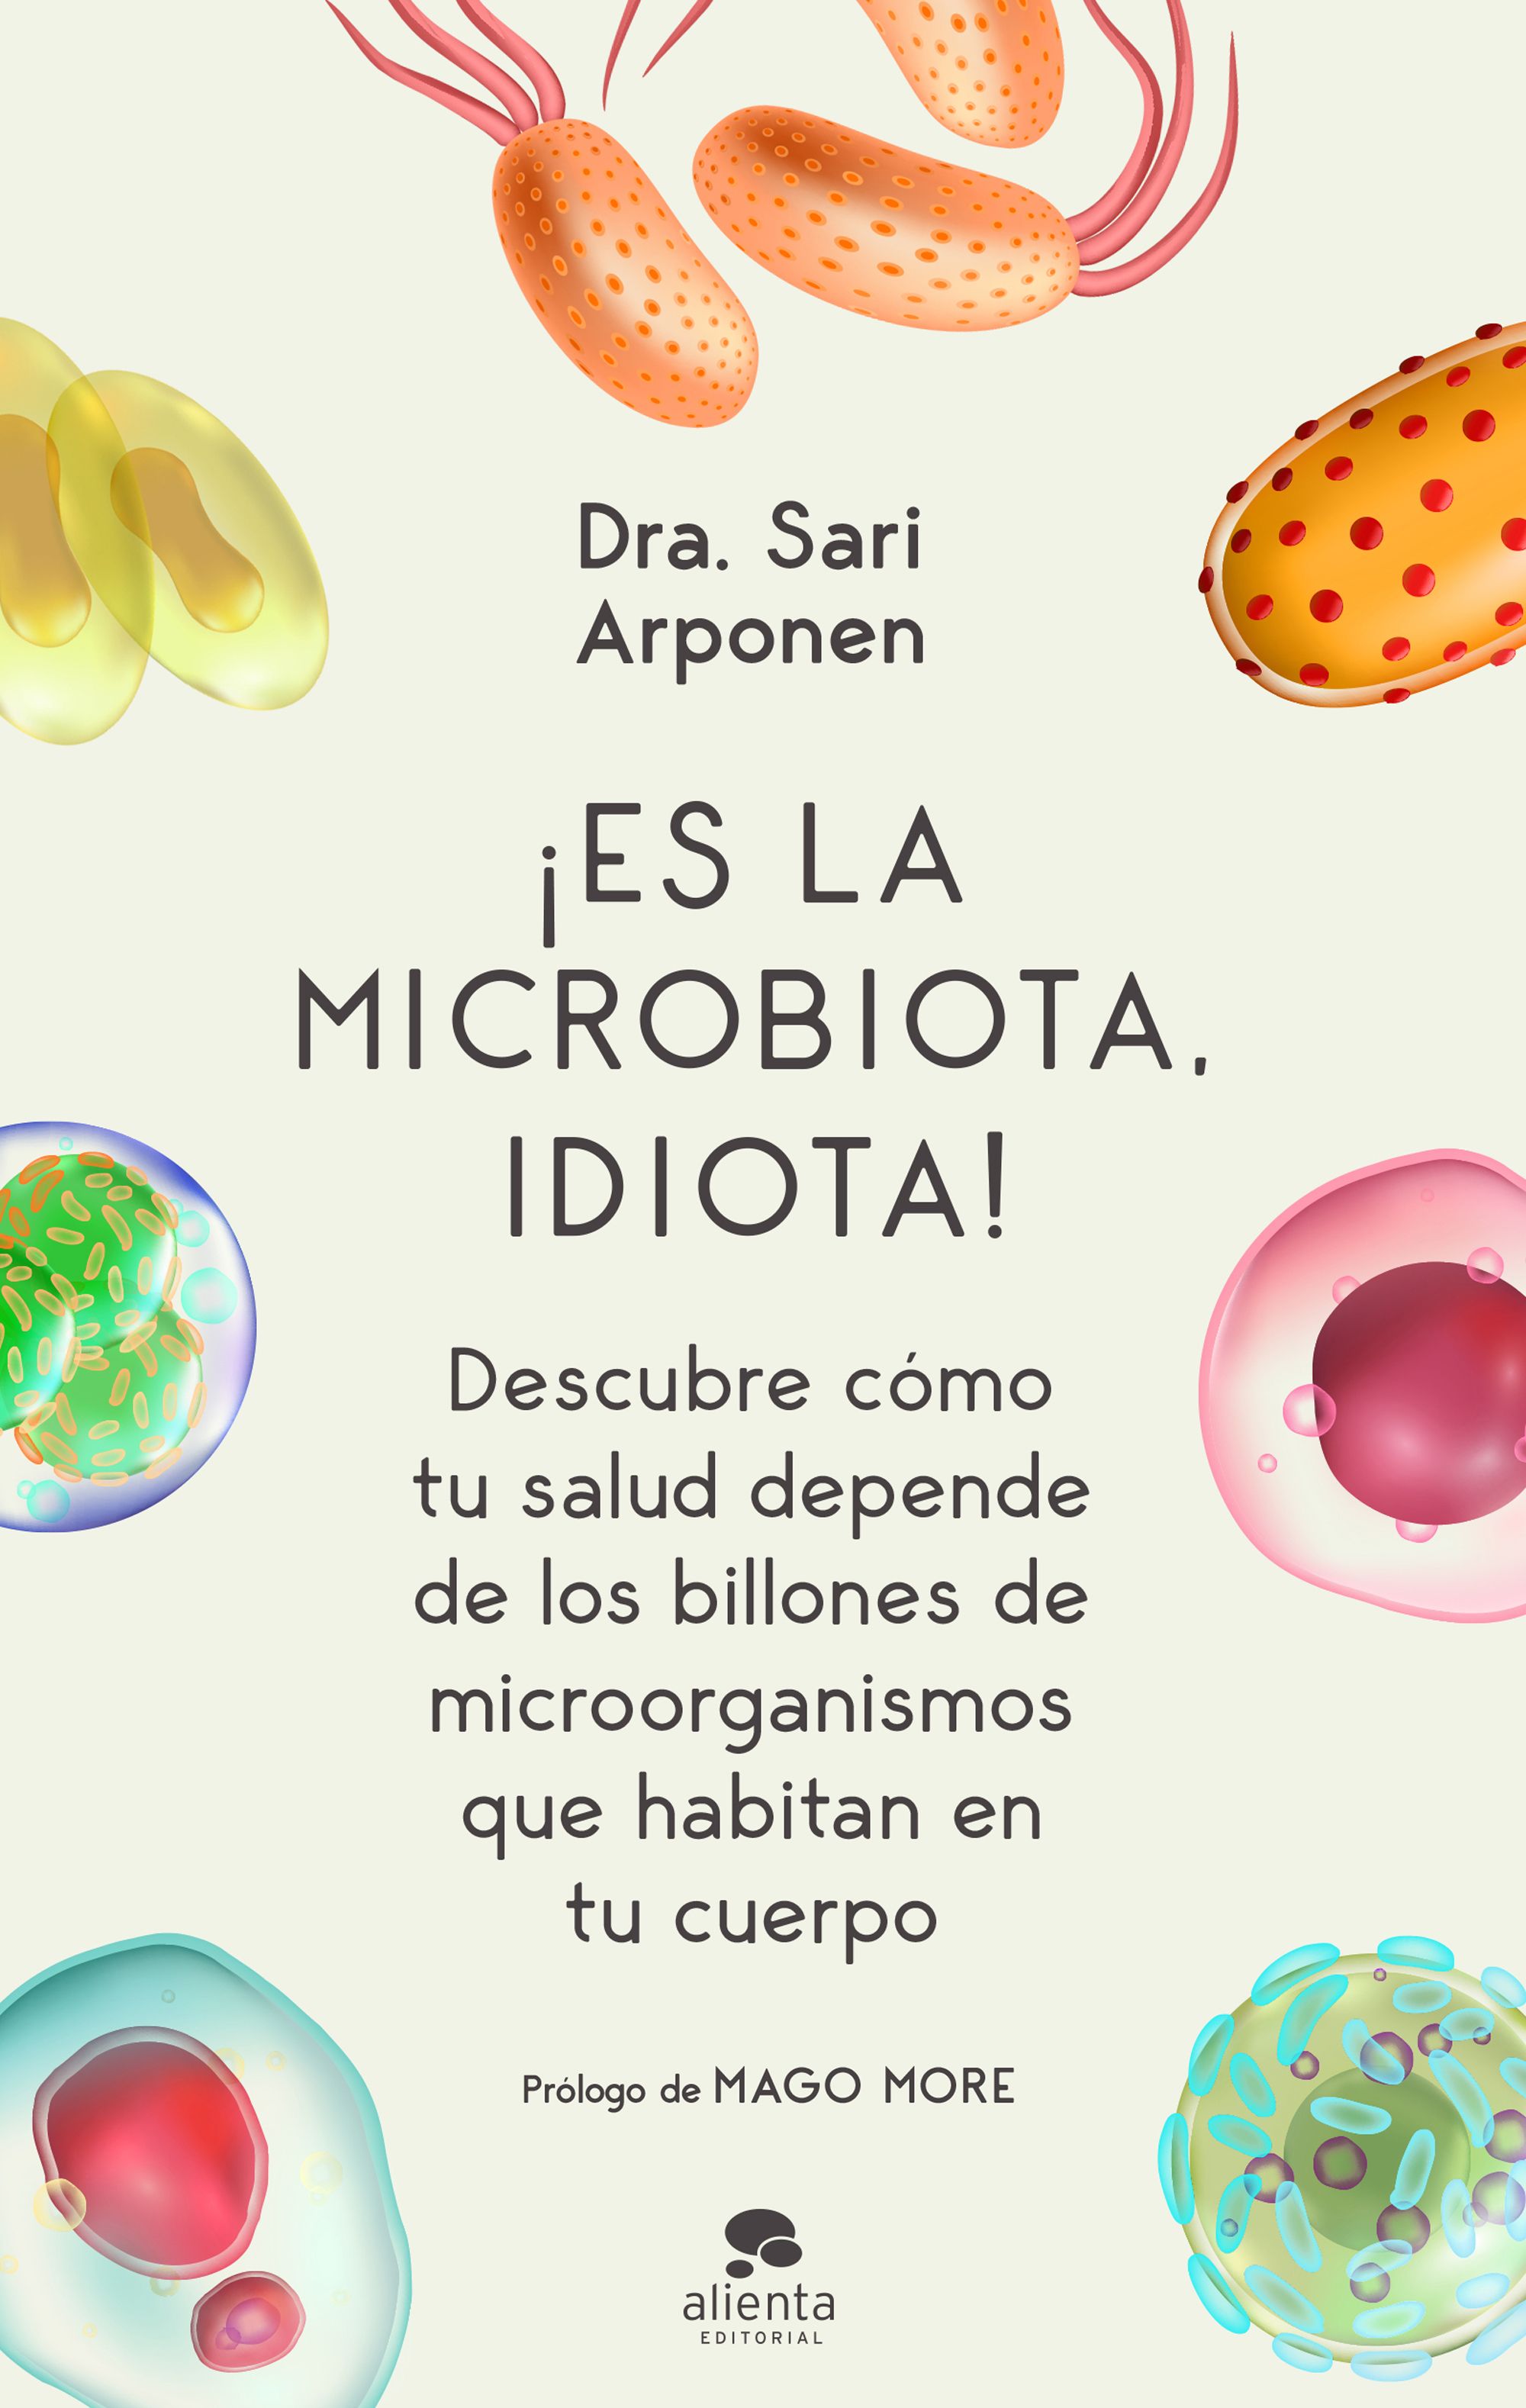 Es la microbiota, idiota! "Descubre como tu salud epende de los billones de microorganismos que habitan en tu cuerpo"